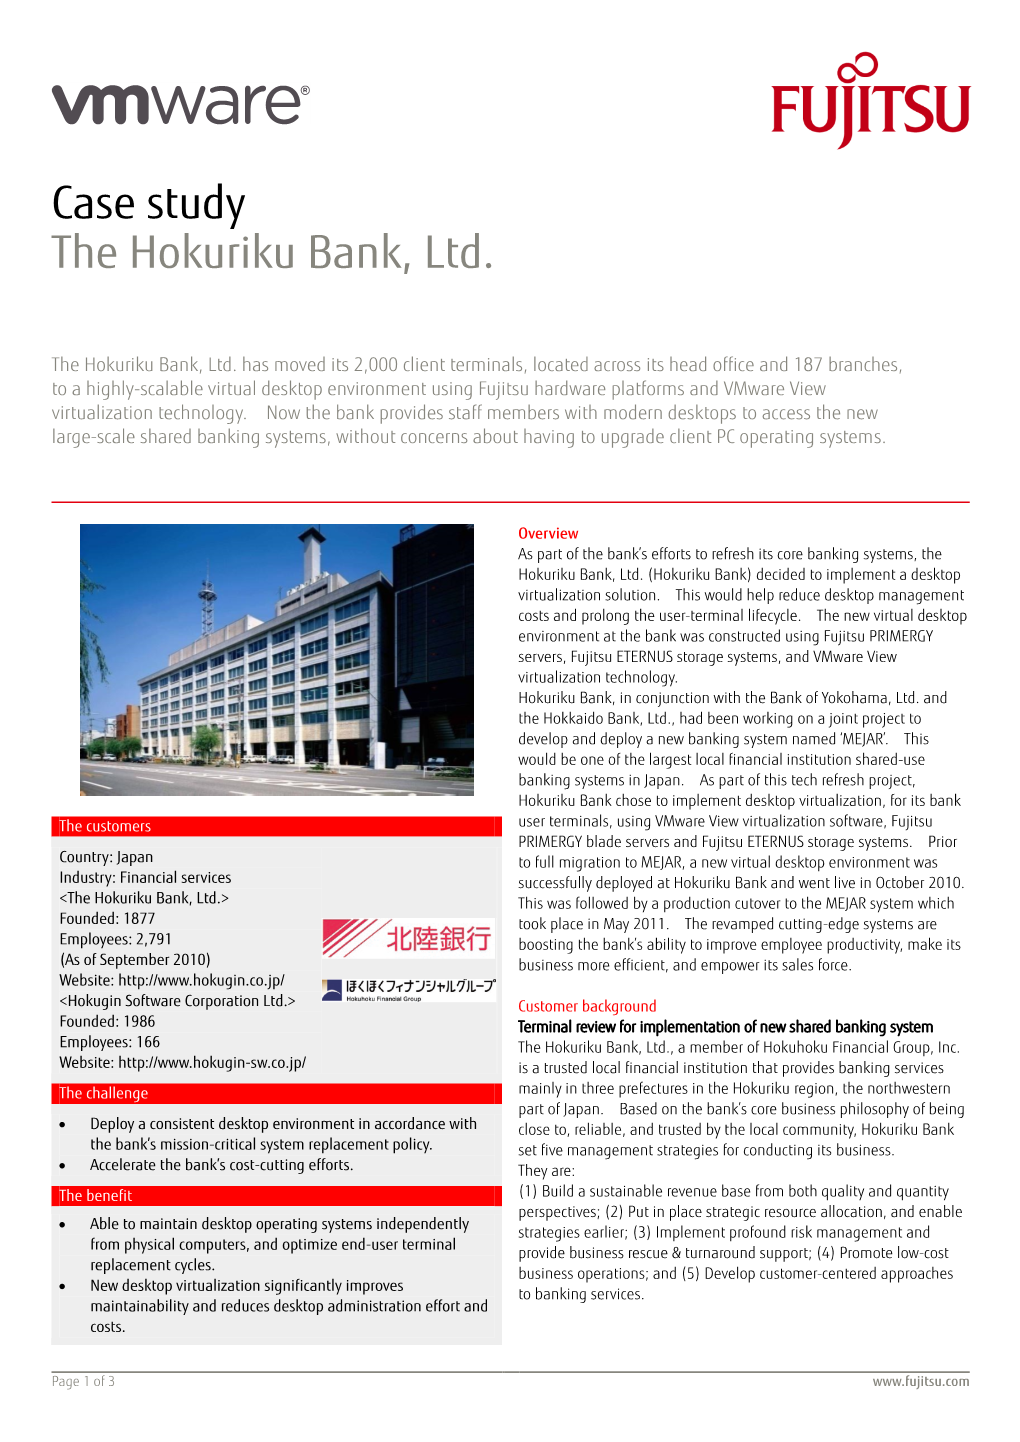 Case Study the Hokuriku Bank, Ltd